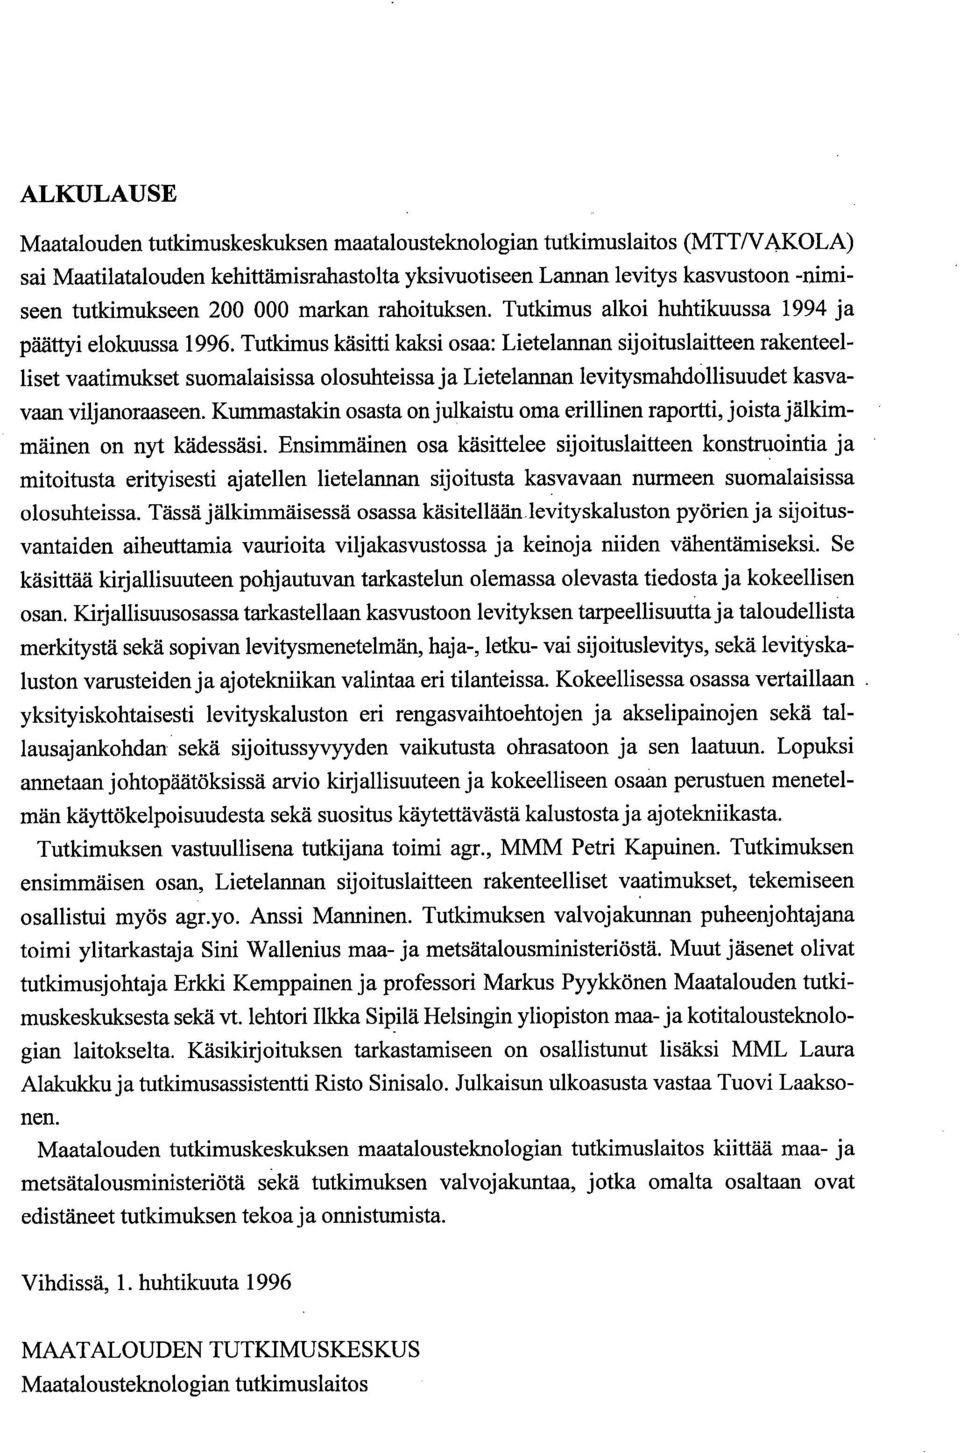 Tutkimus käsitti kaksi osaa: Lietelannan sijoituslaitteen rakenteelliset vaatimukset suomalaisissa olosuhteissa ja Lietelannan levitysmahdollisuudet kasvavaan viljanoraaseen.